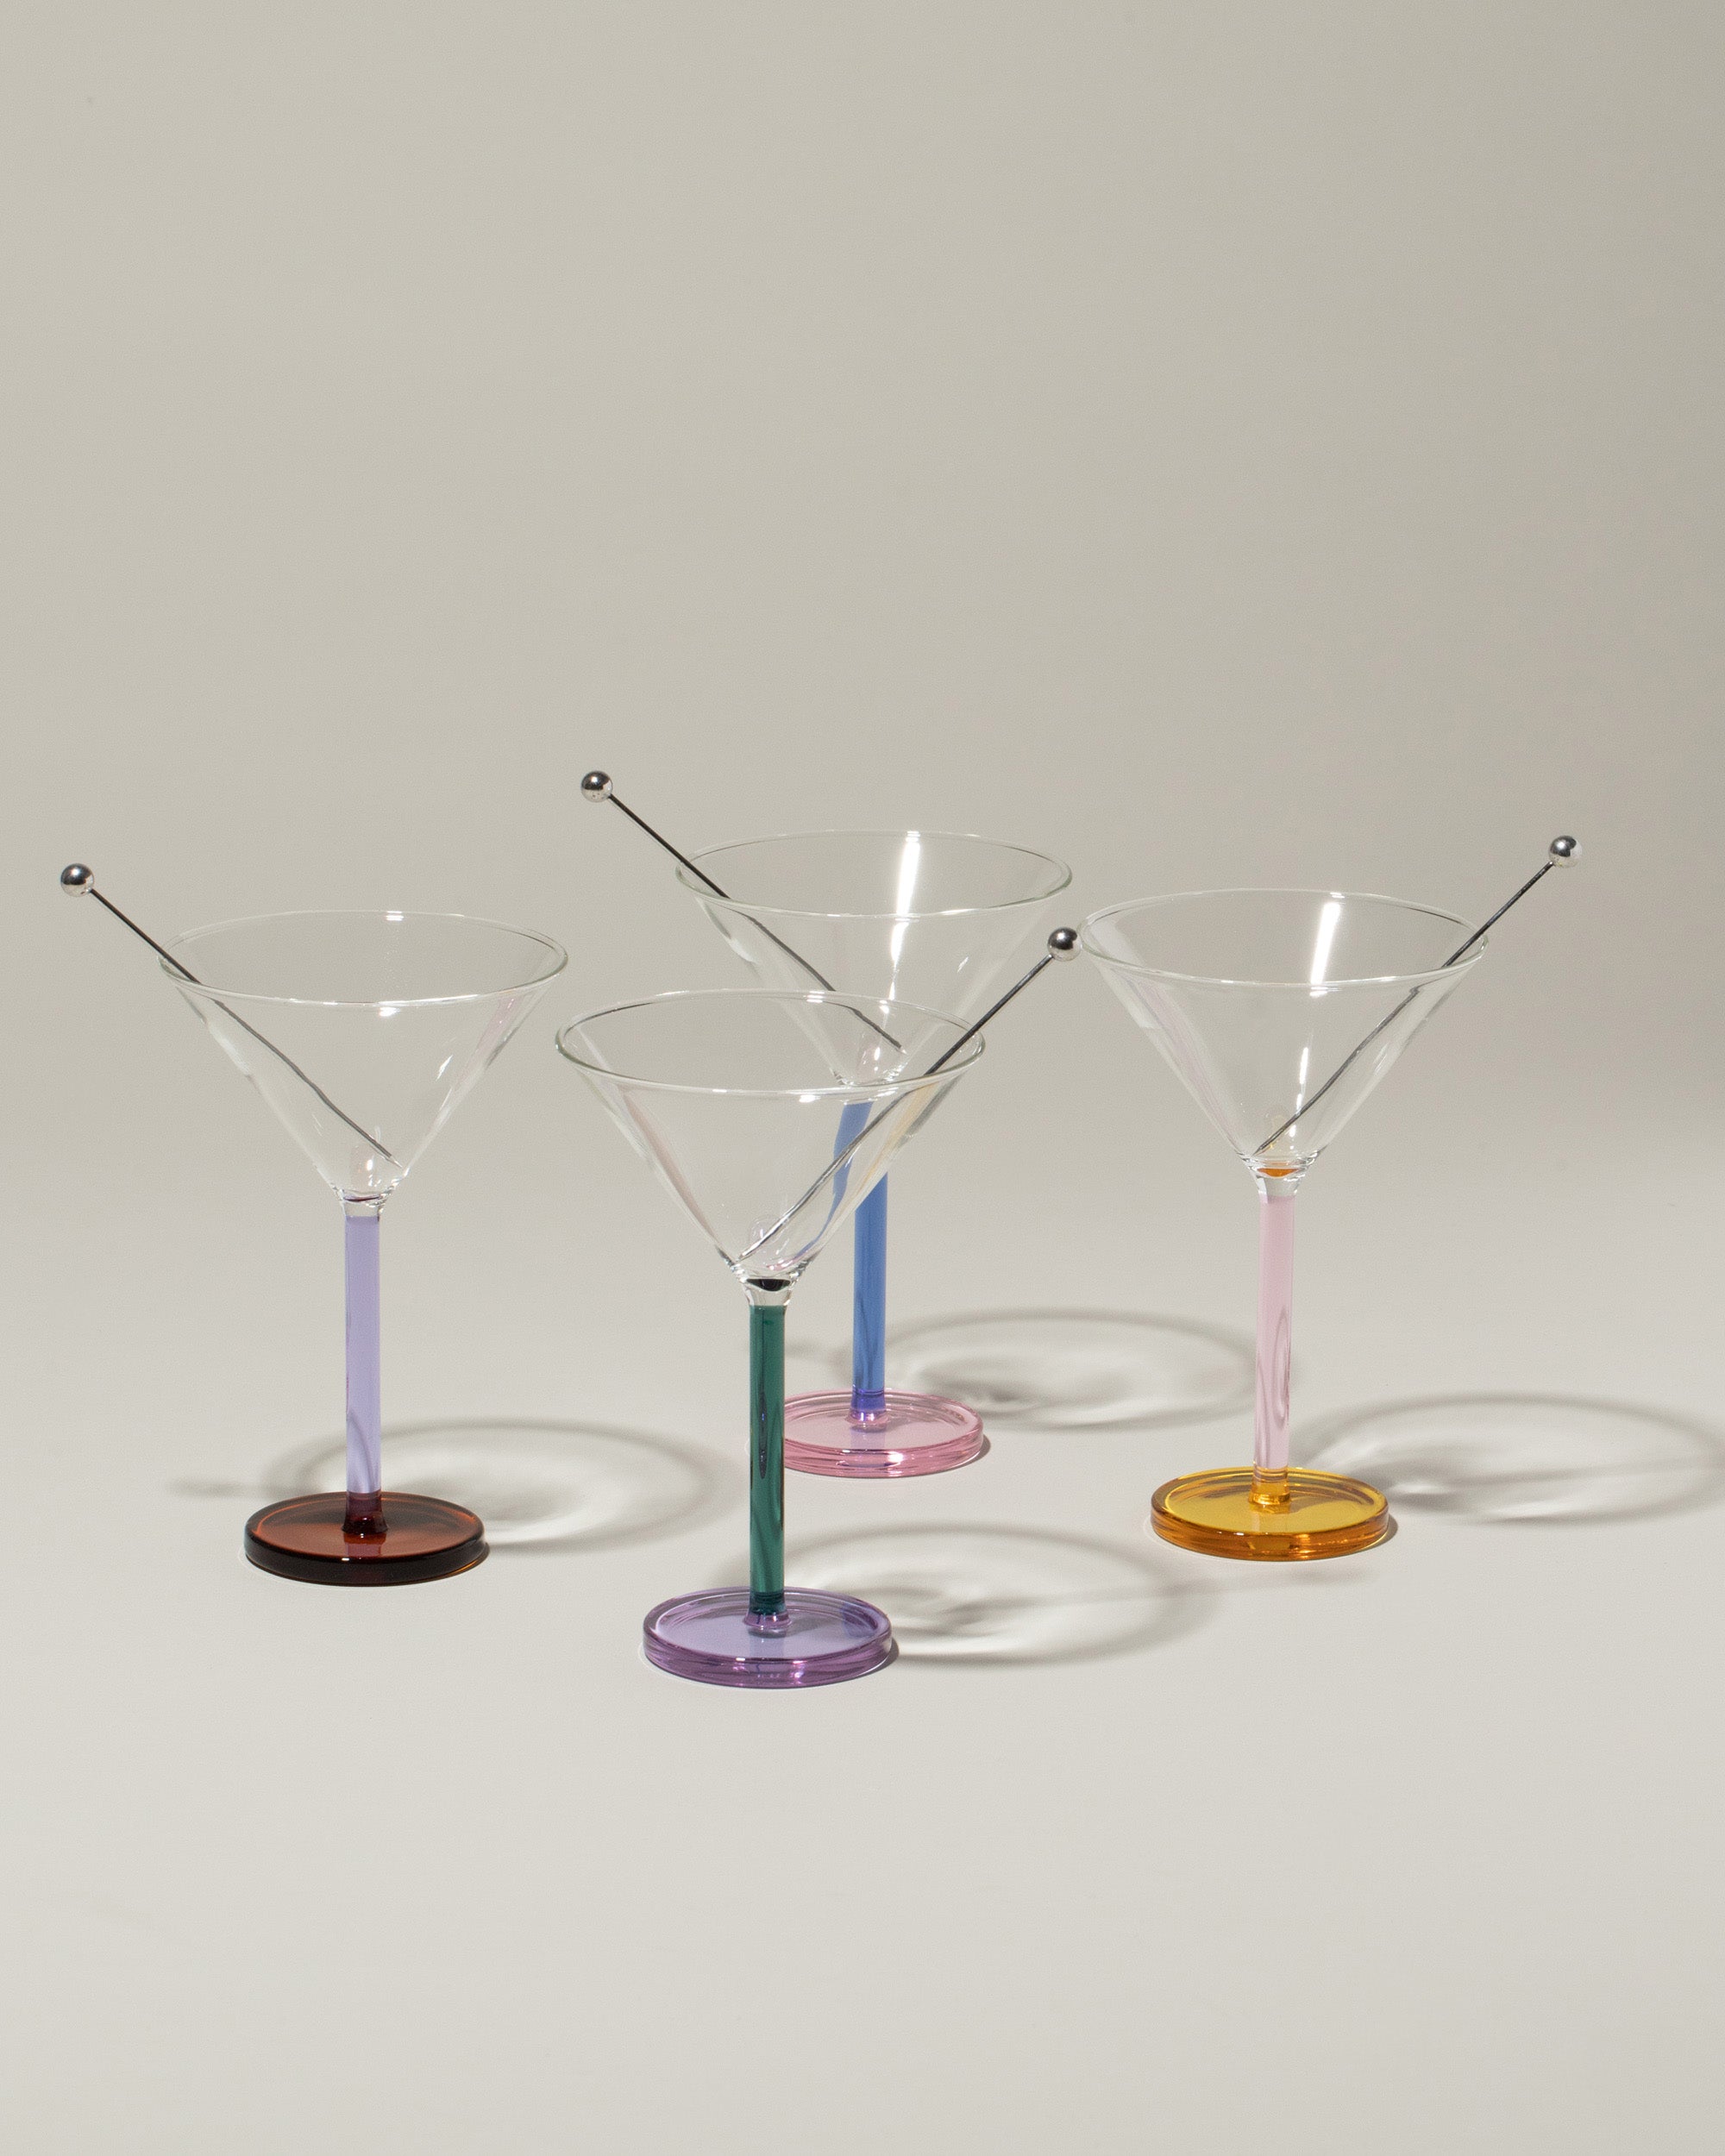 Plastic Mini Martini Glass